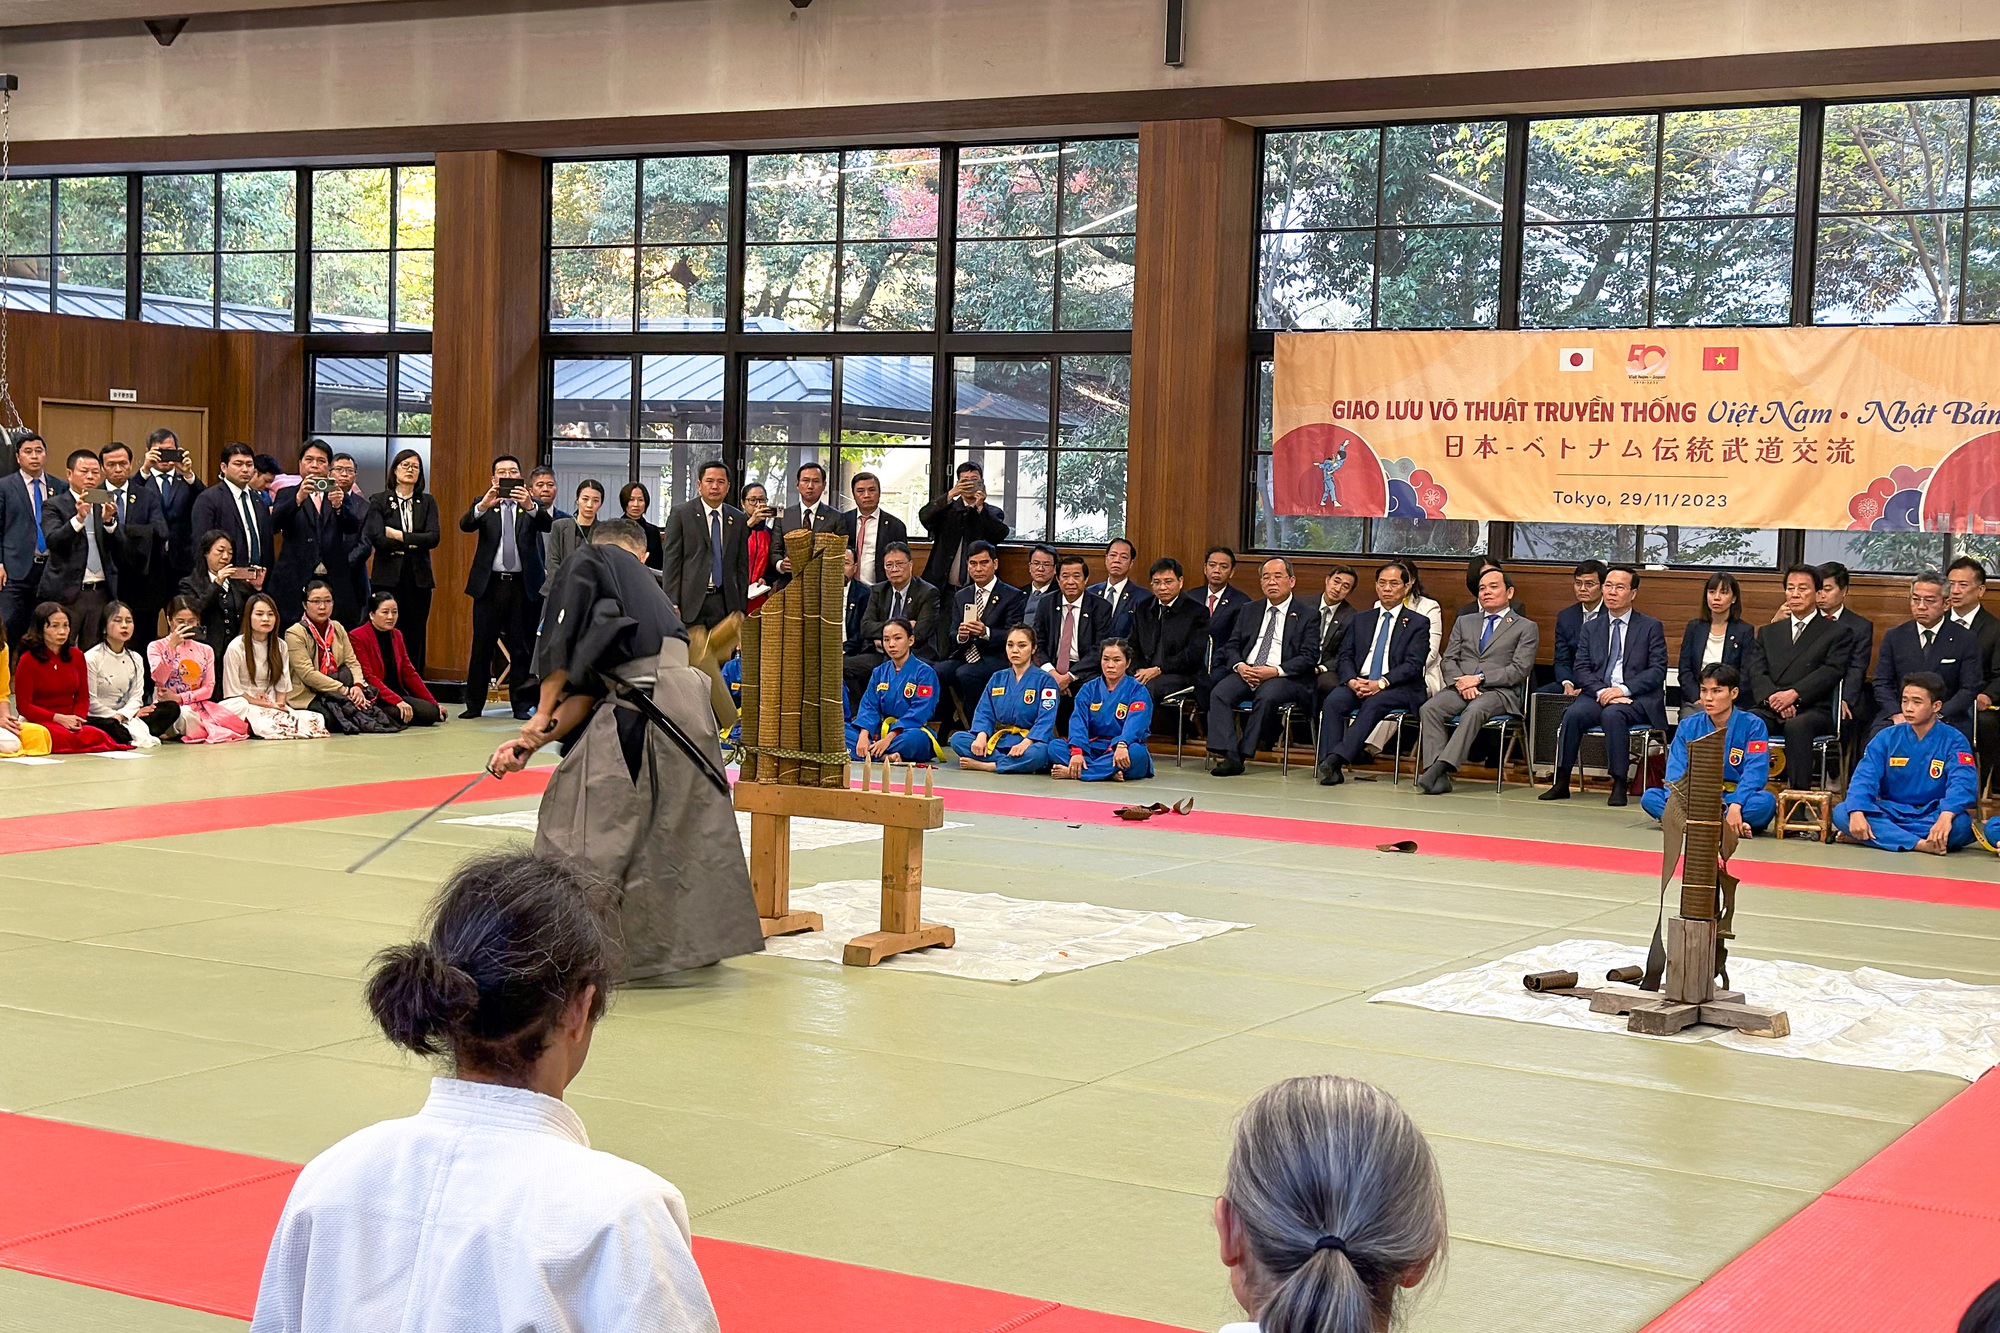 Chủ tịch nước Võ Văn Thưởng dự chương trình giao lưu và trình diễn võ thuật Vovinam và Võ đạo Nhật Bản - Ảnh 5.